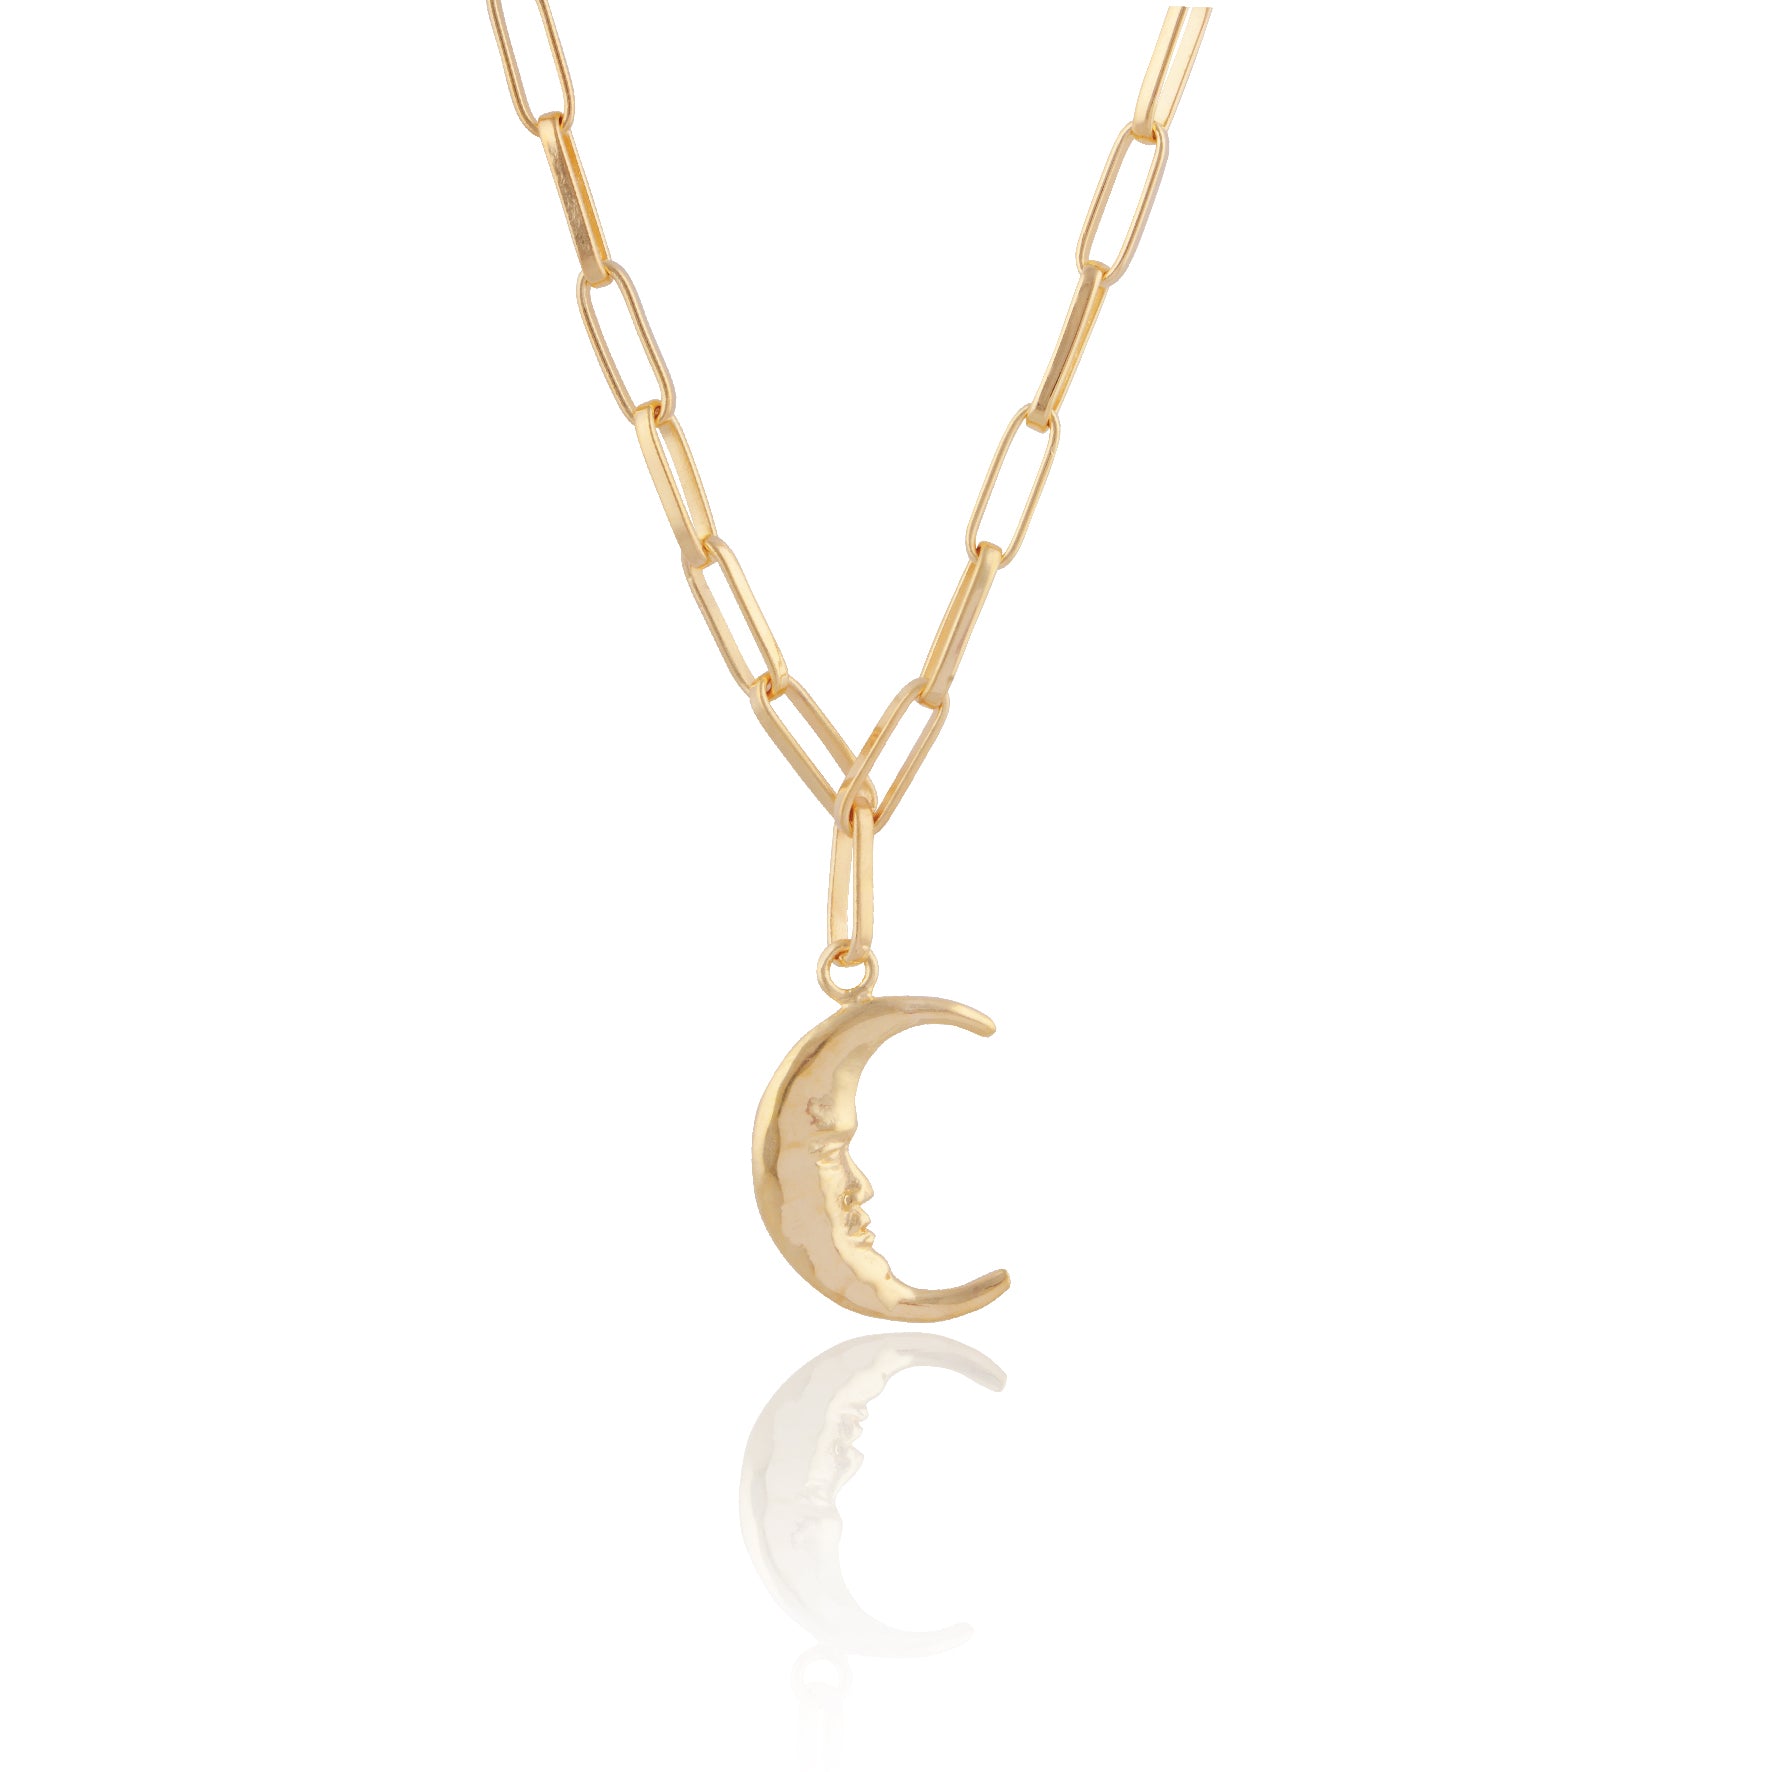 Neri x Luna & Rose - Moonlight Necklace - Gold